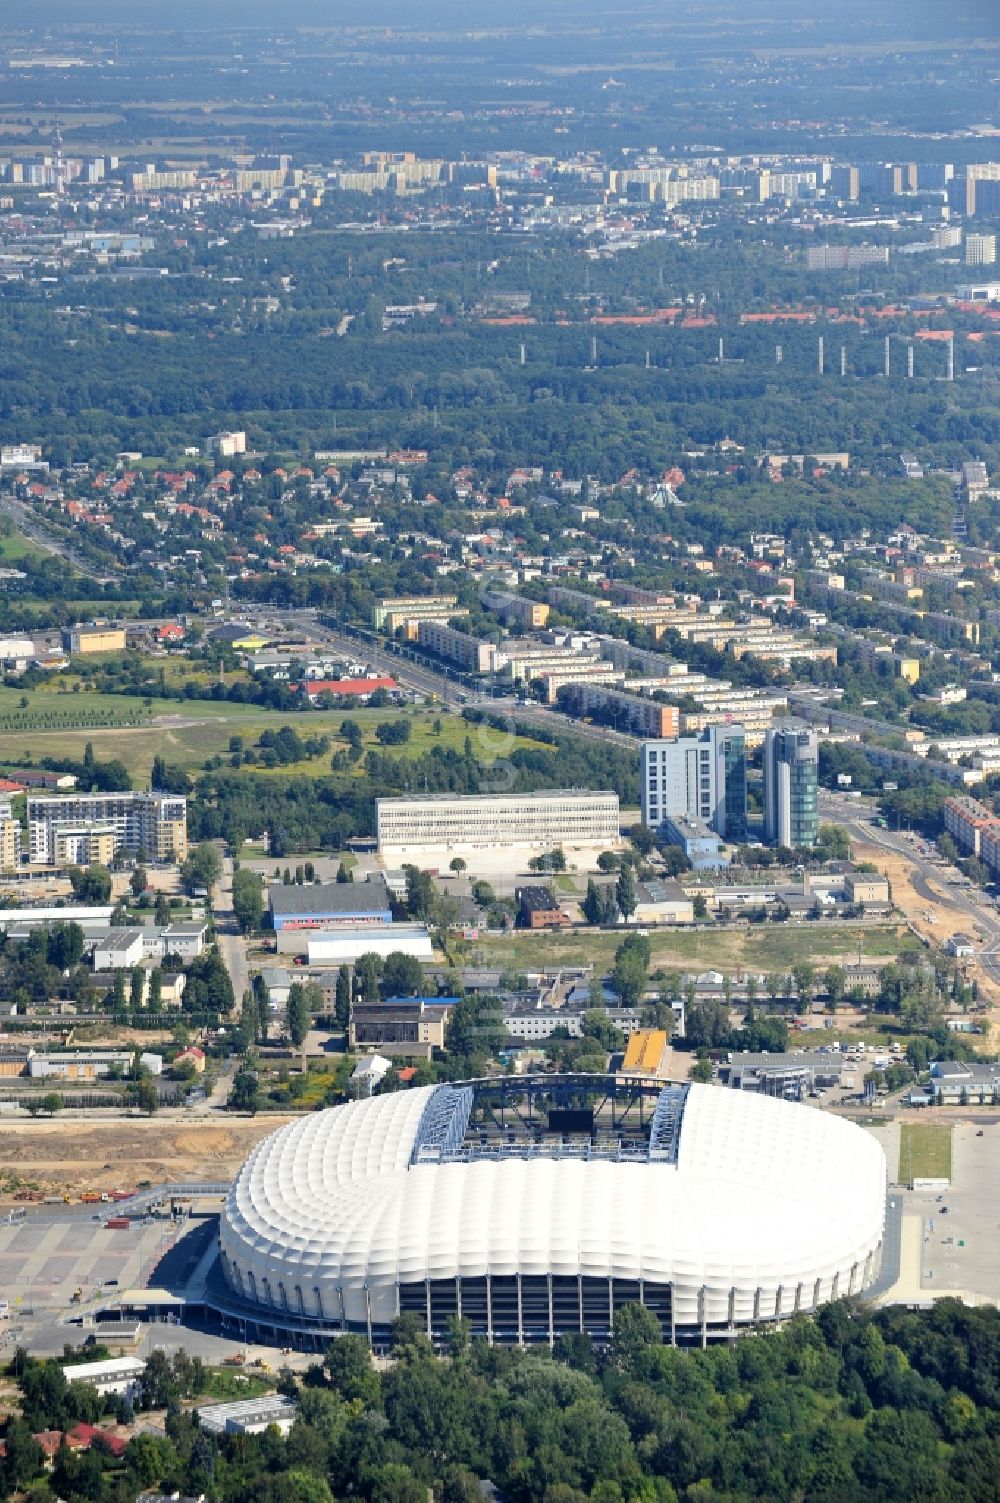 Poznan von oben - Arena des Stadion Stadion Miejski - INEA Stadion in Poznan - Posen in Wielkopolskie - Großpolen, Polen